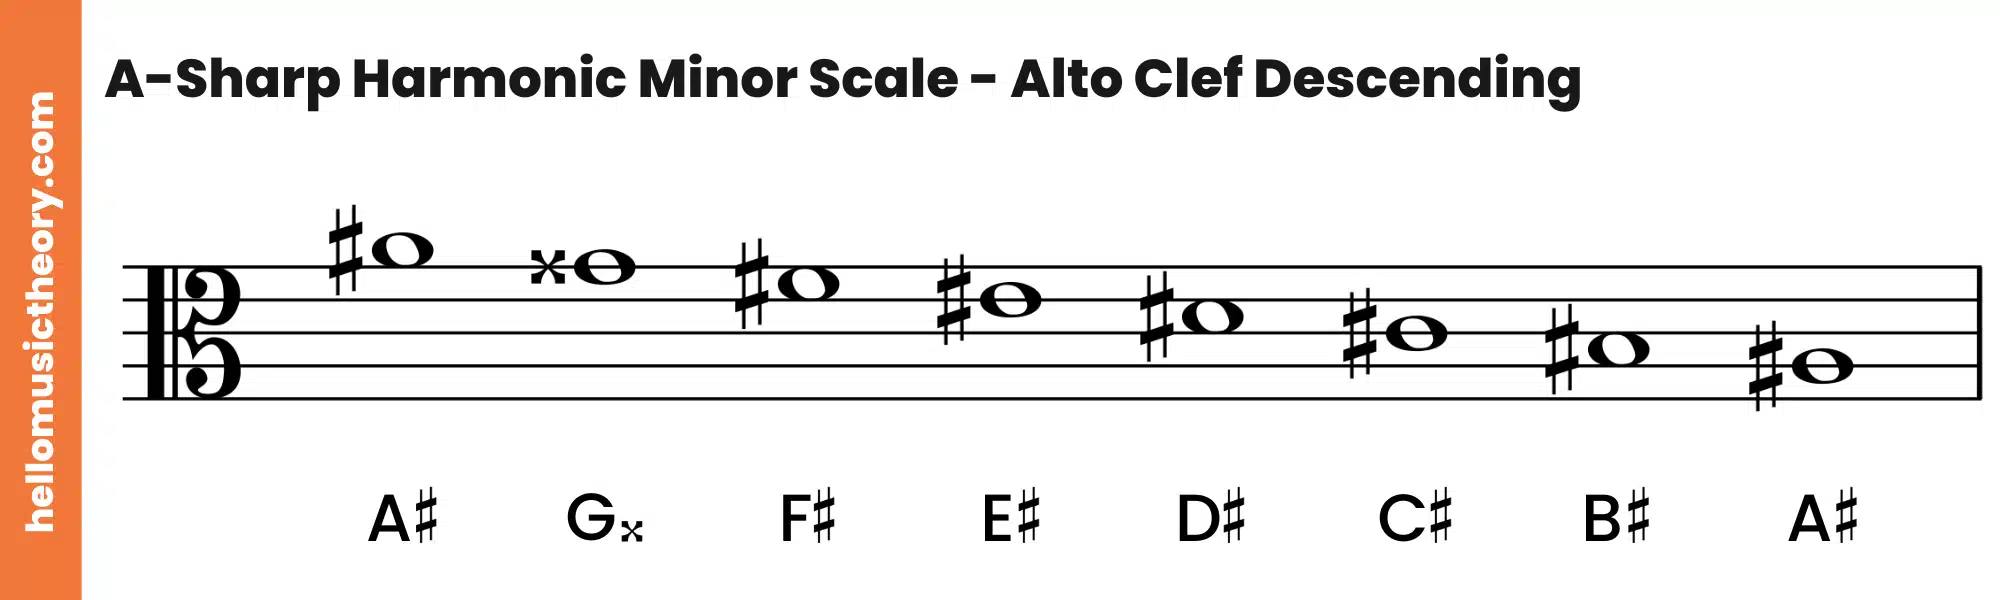 A-Sharp Harmonic Minor Scale Alto Clef Descending